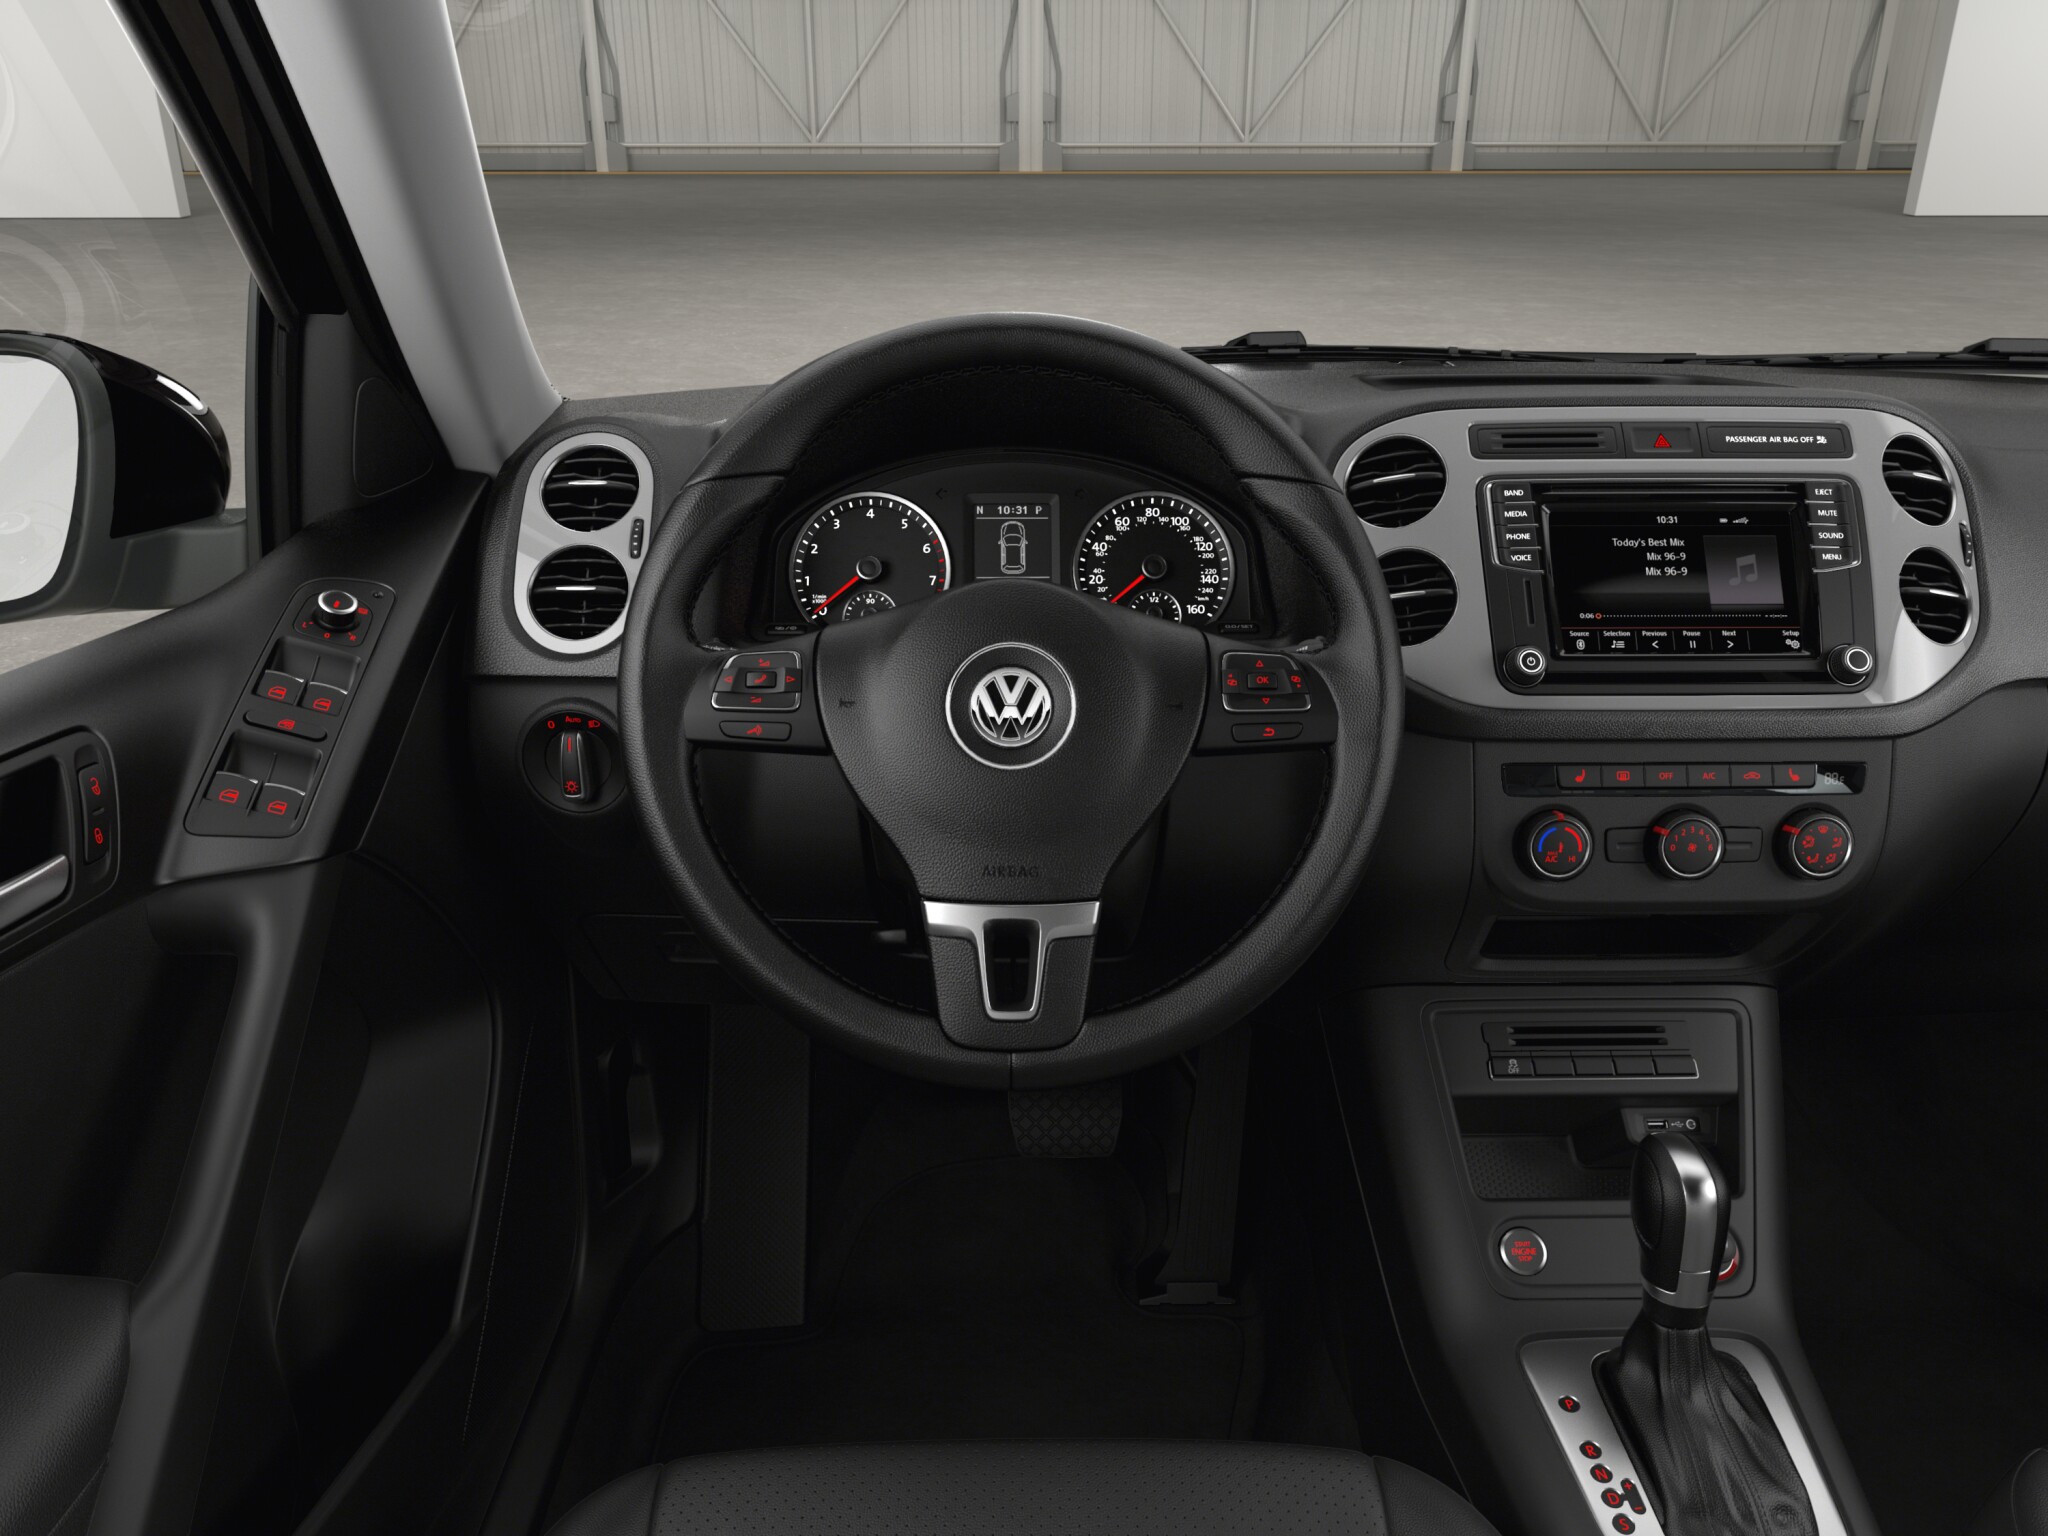 Volkswagen Tiguan Highline Diesel interior front Dashboard view